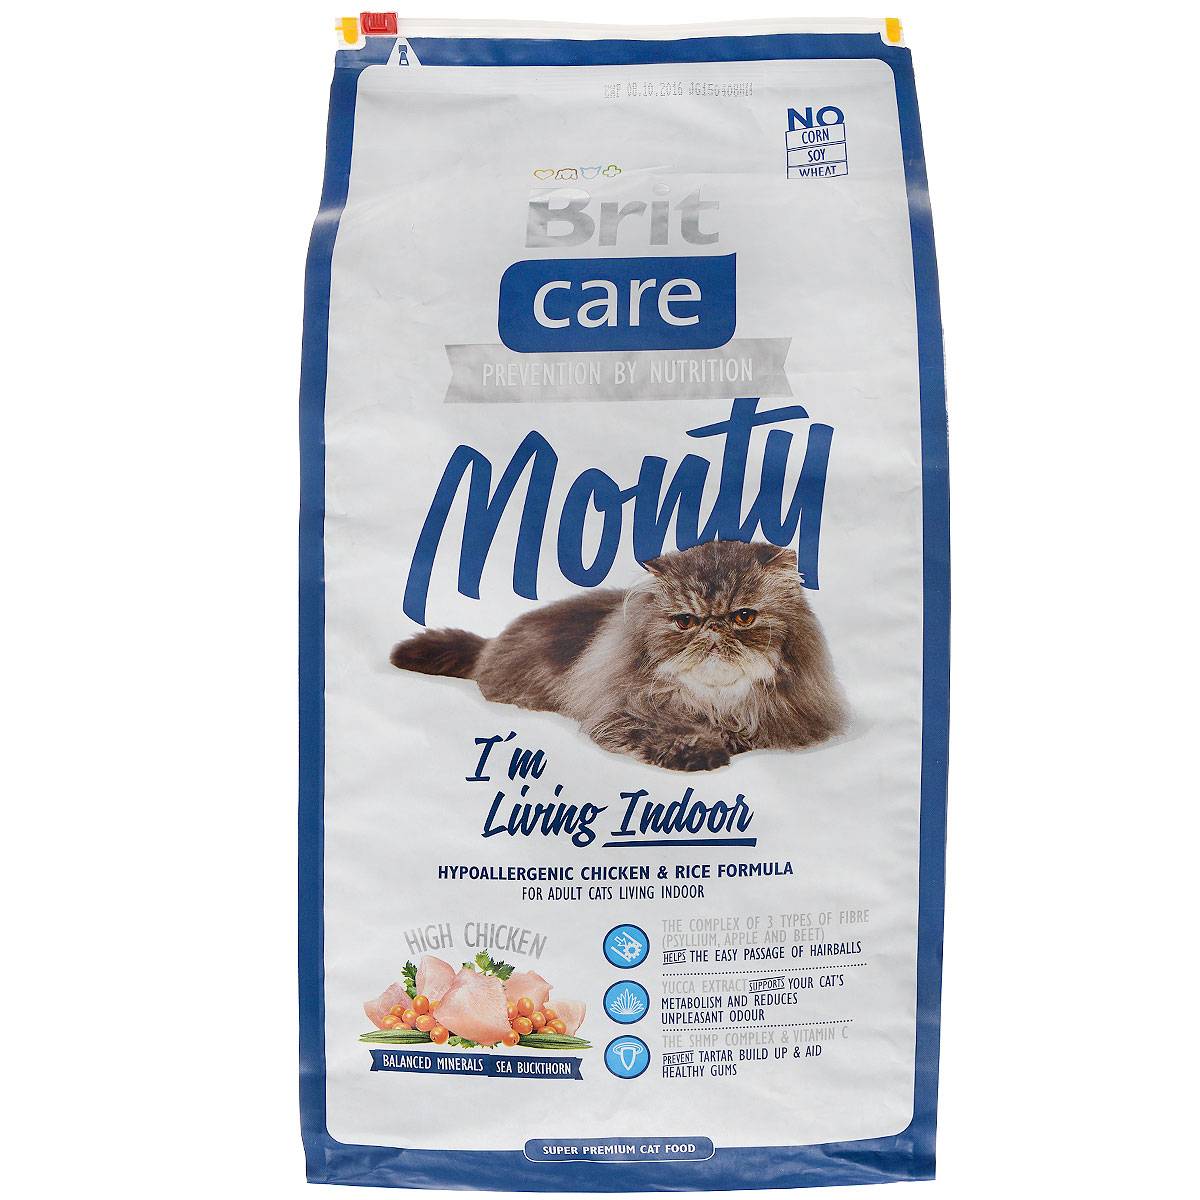 Лучшие корма для котят - рейтинг кормов по качеству